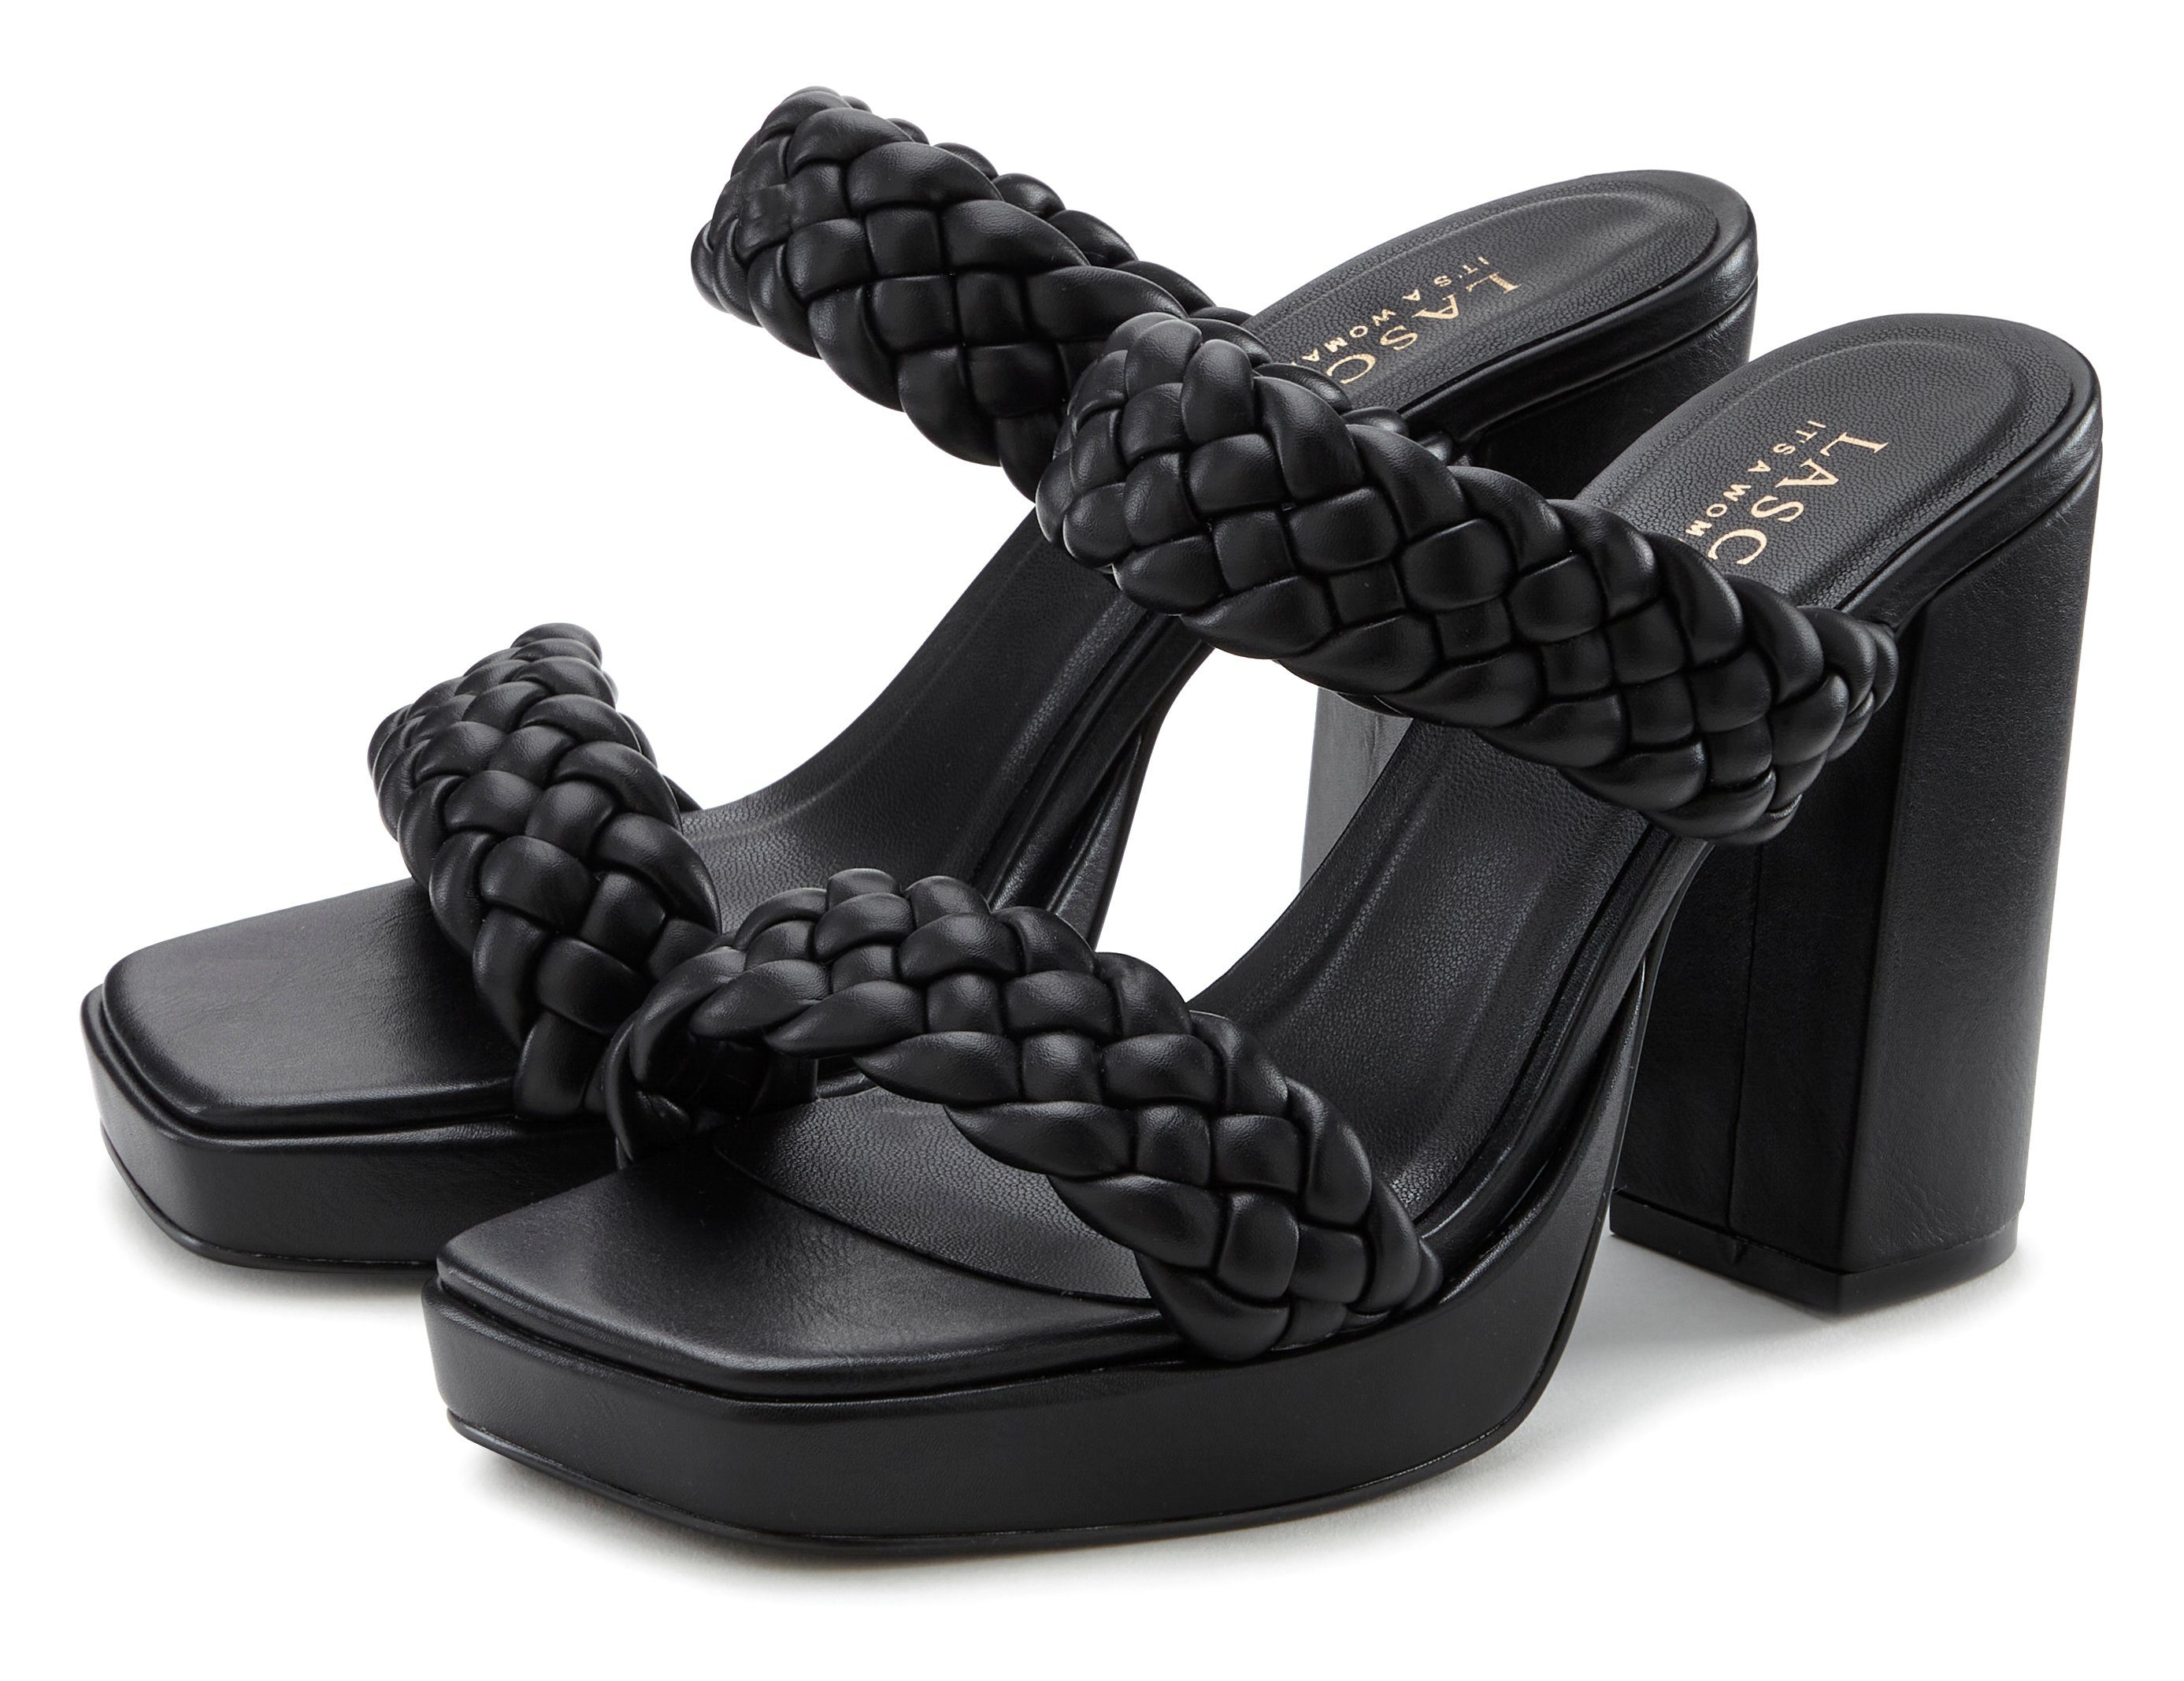 Pantolette schwarz LASCANA Riemchen Flecht-Design raffinierte Sandale, offener im Schuh, Mule,